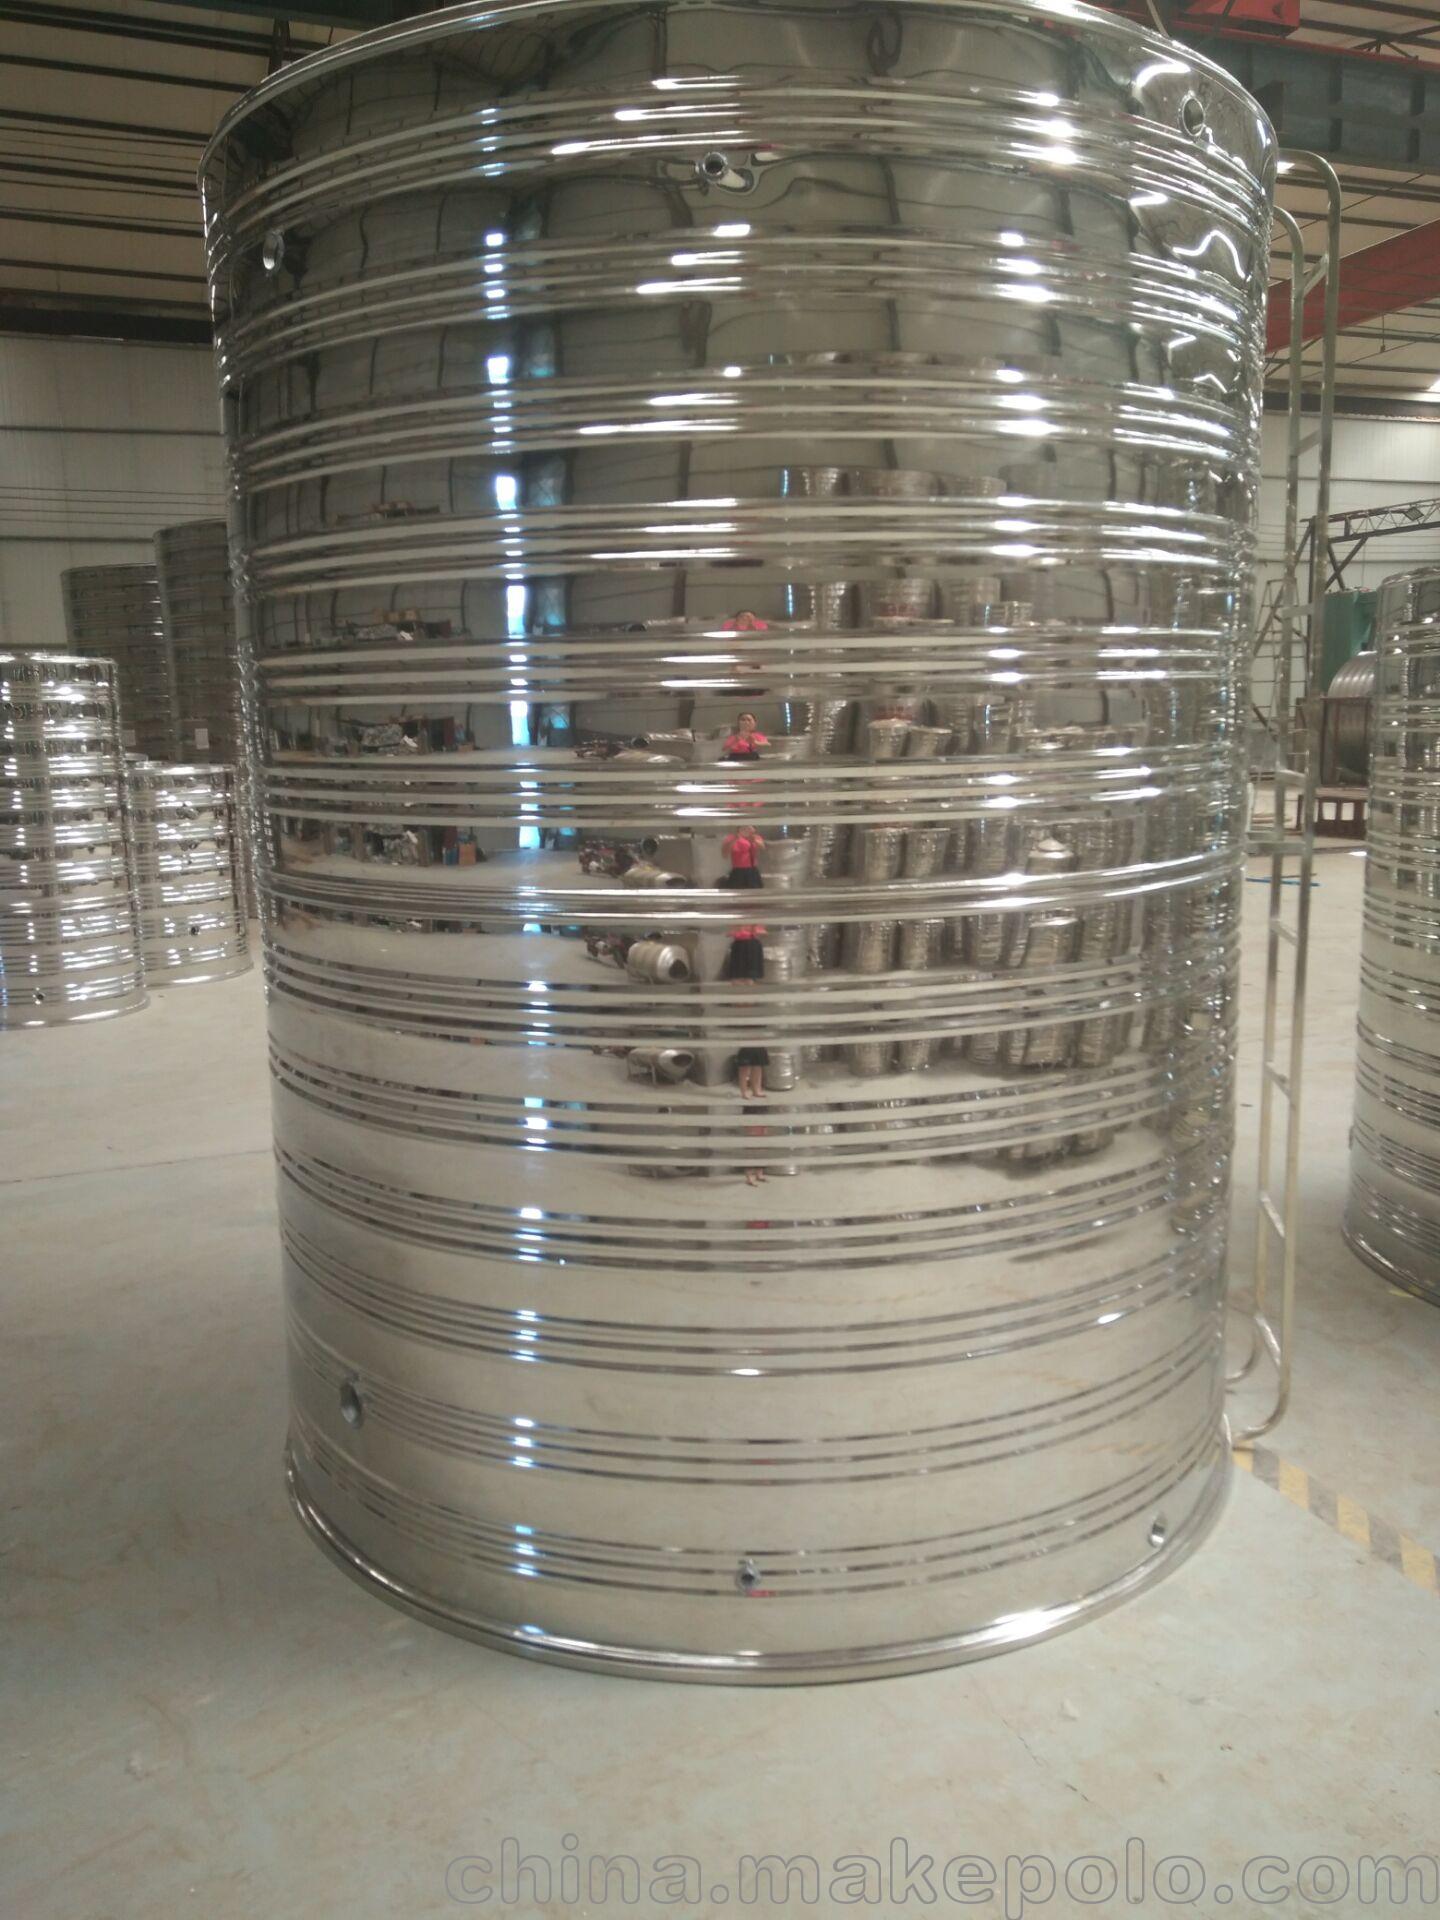 不锈钢保温水箱,方形水箱,承压水箱,聚氨酯保温管道生产销售一体化